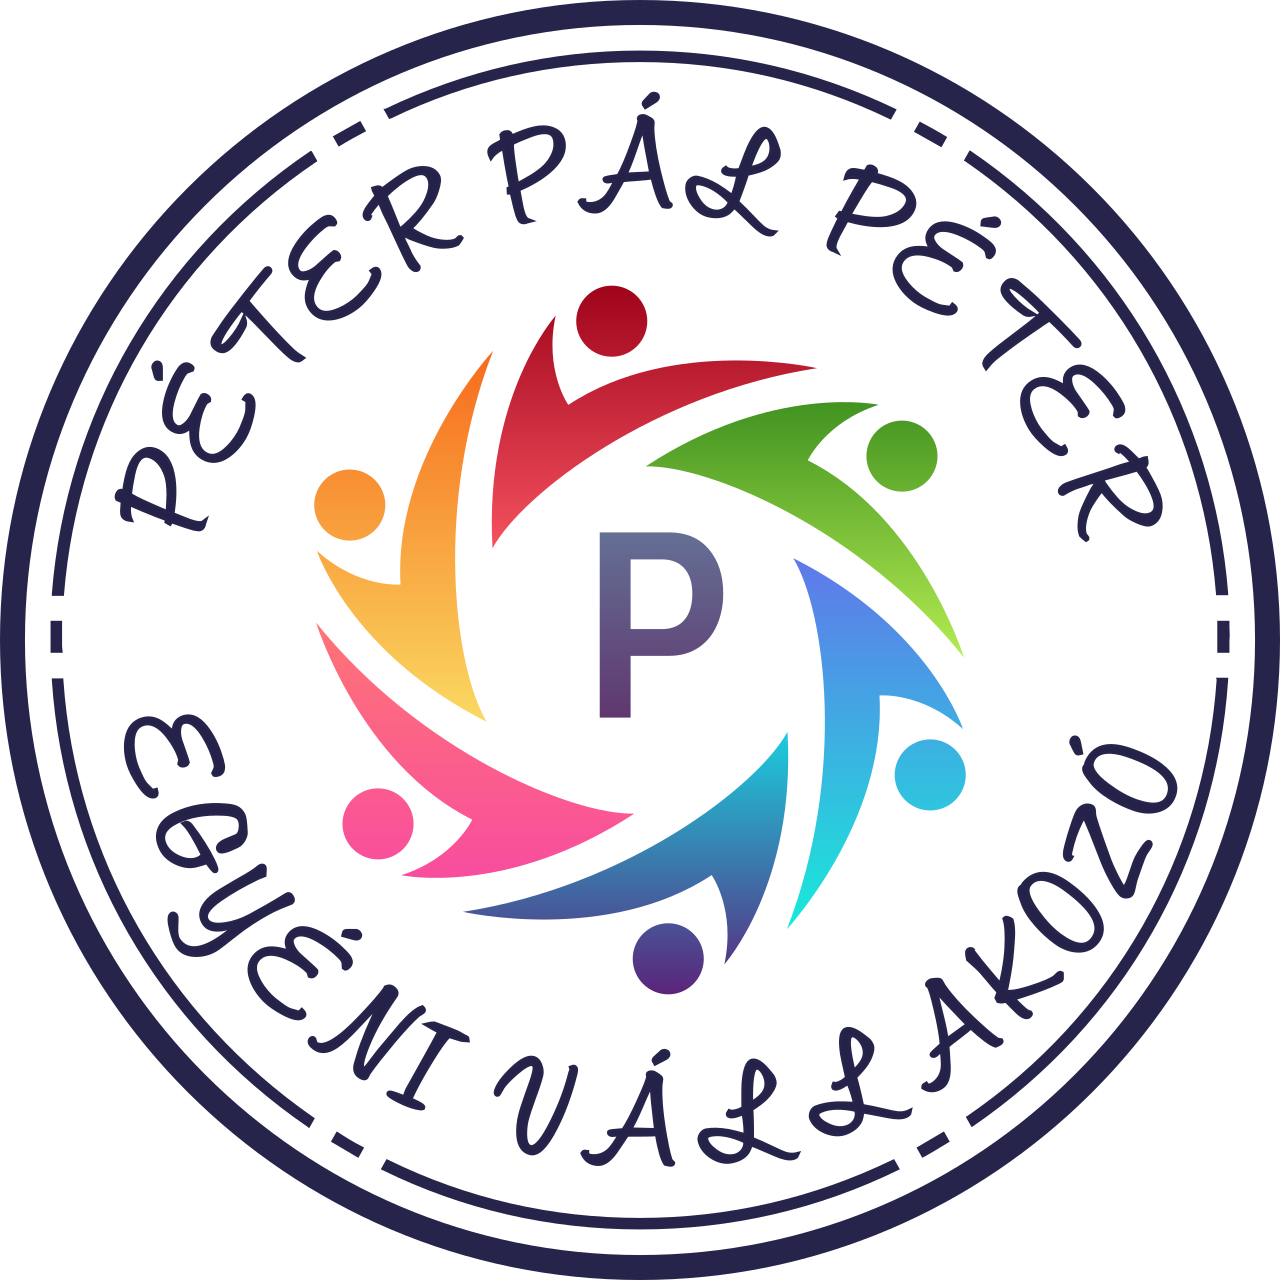 PÉTER PÁL PÉTER's web page